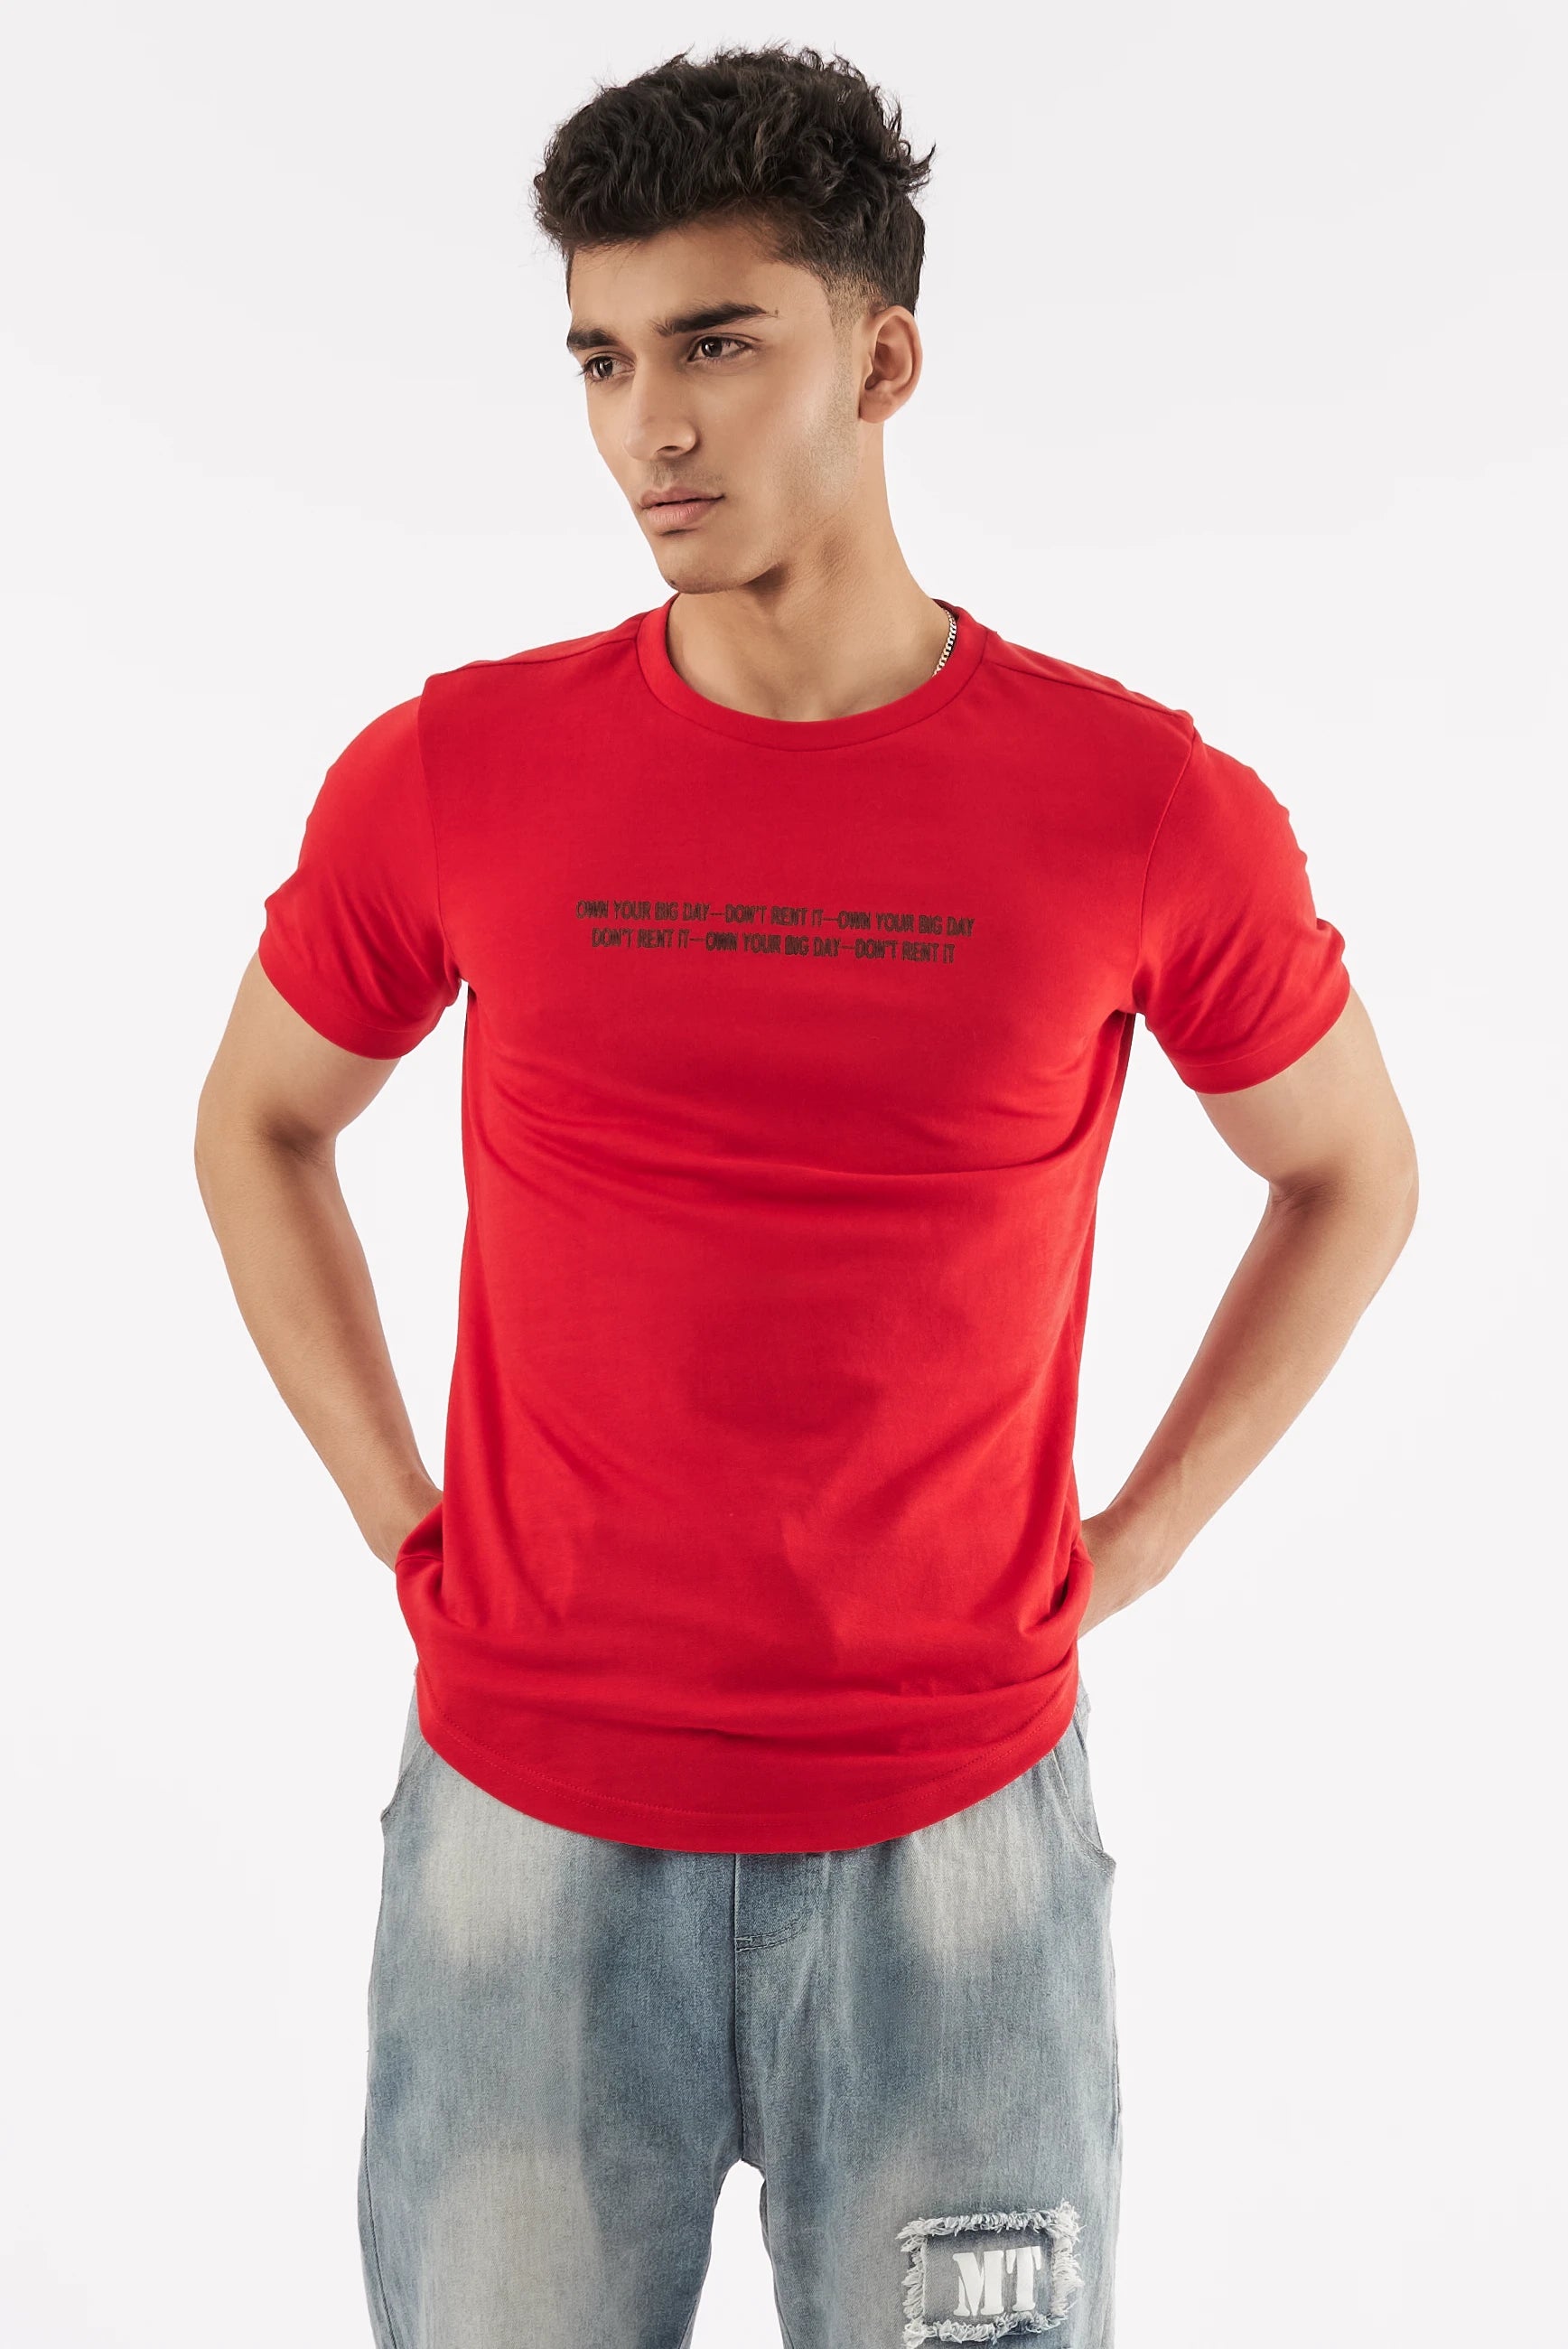 Men's Short-Sleeve T-Shirt Red